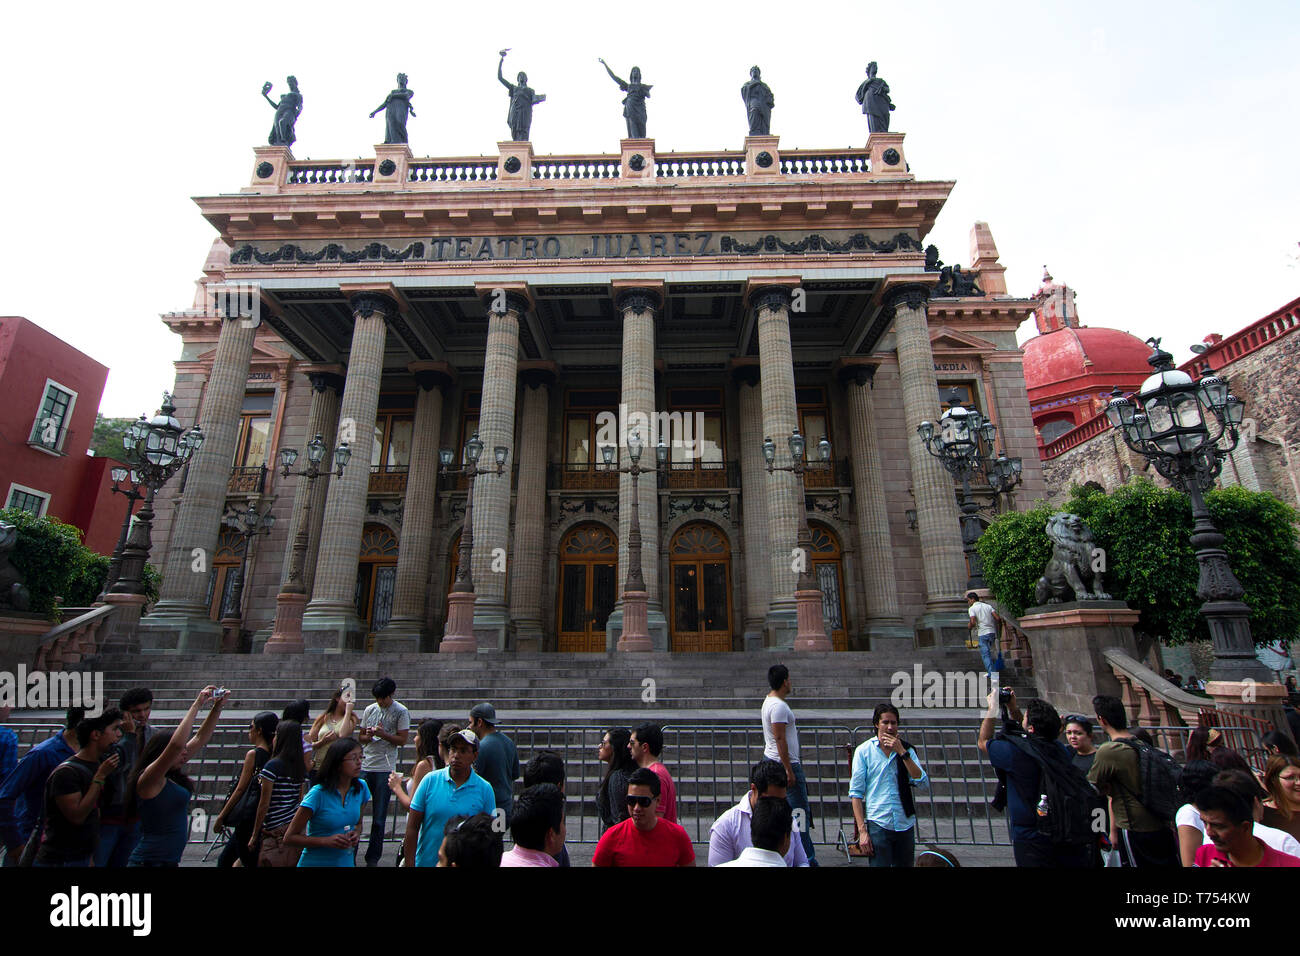 La ville de Guanajuato, Guanajuato, Mexique - 2019 : les touristes de prendre des photos en face de Teatro Juárez, un théâtre historique. Banque D'Images